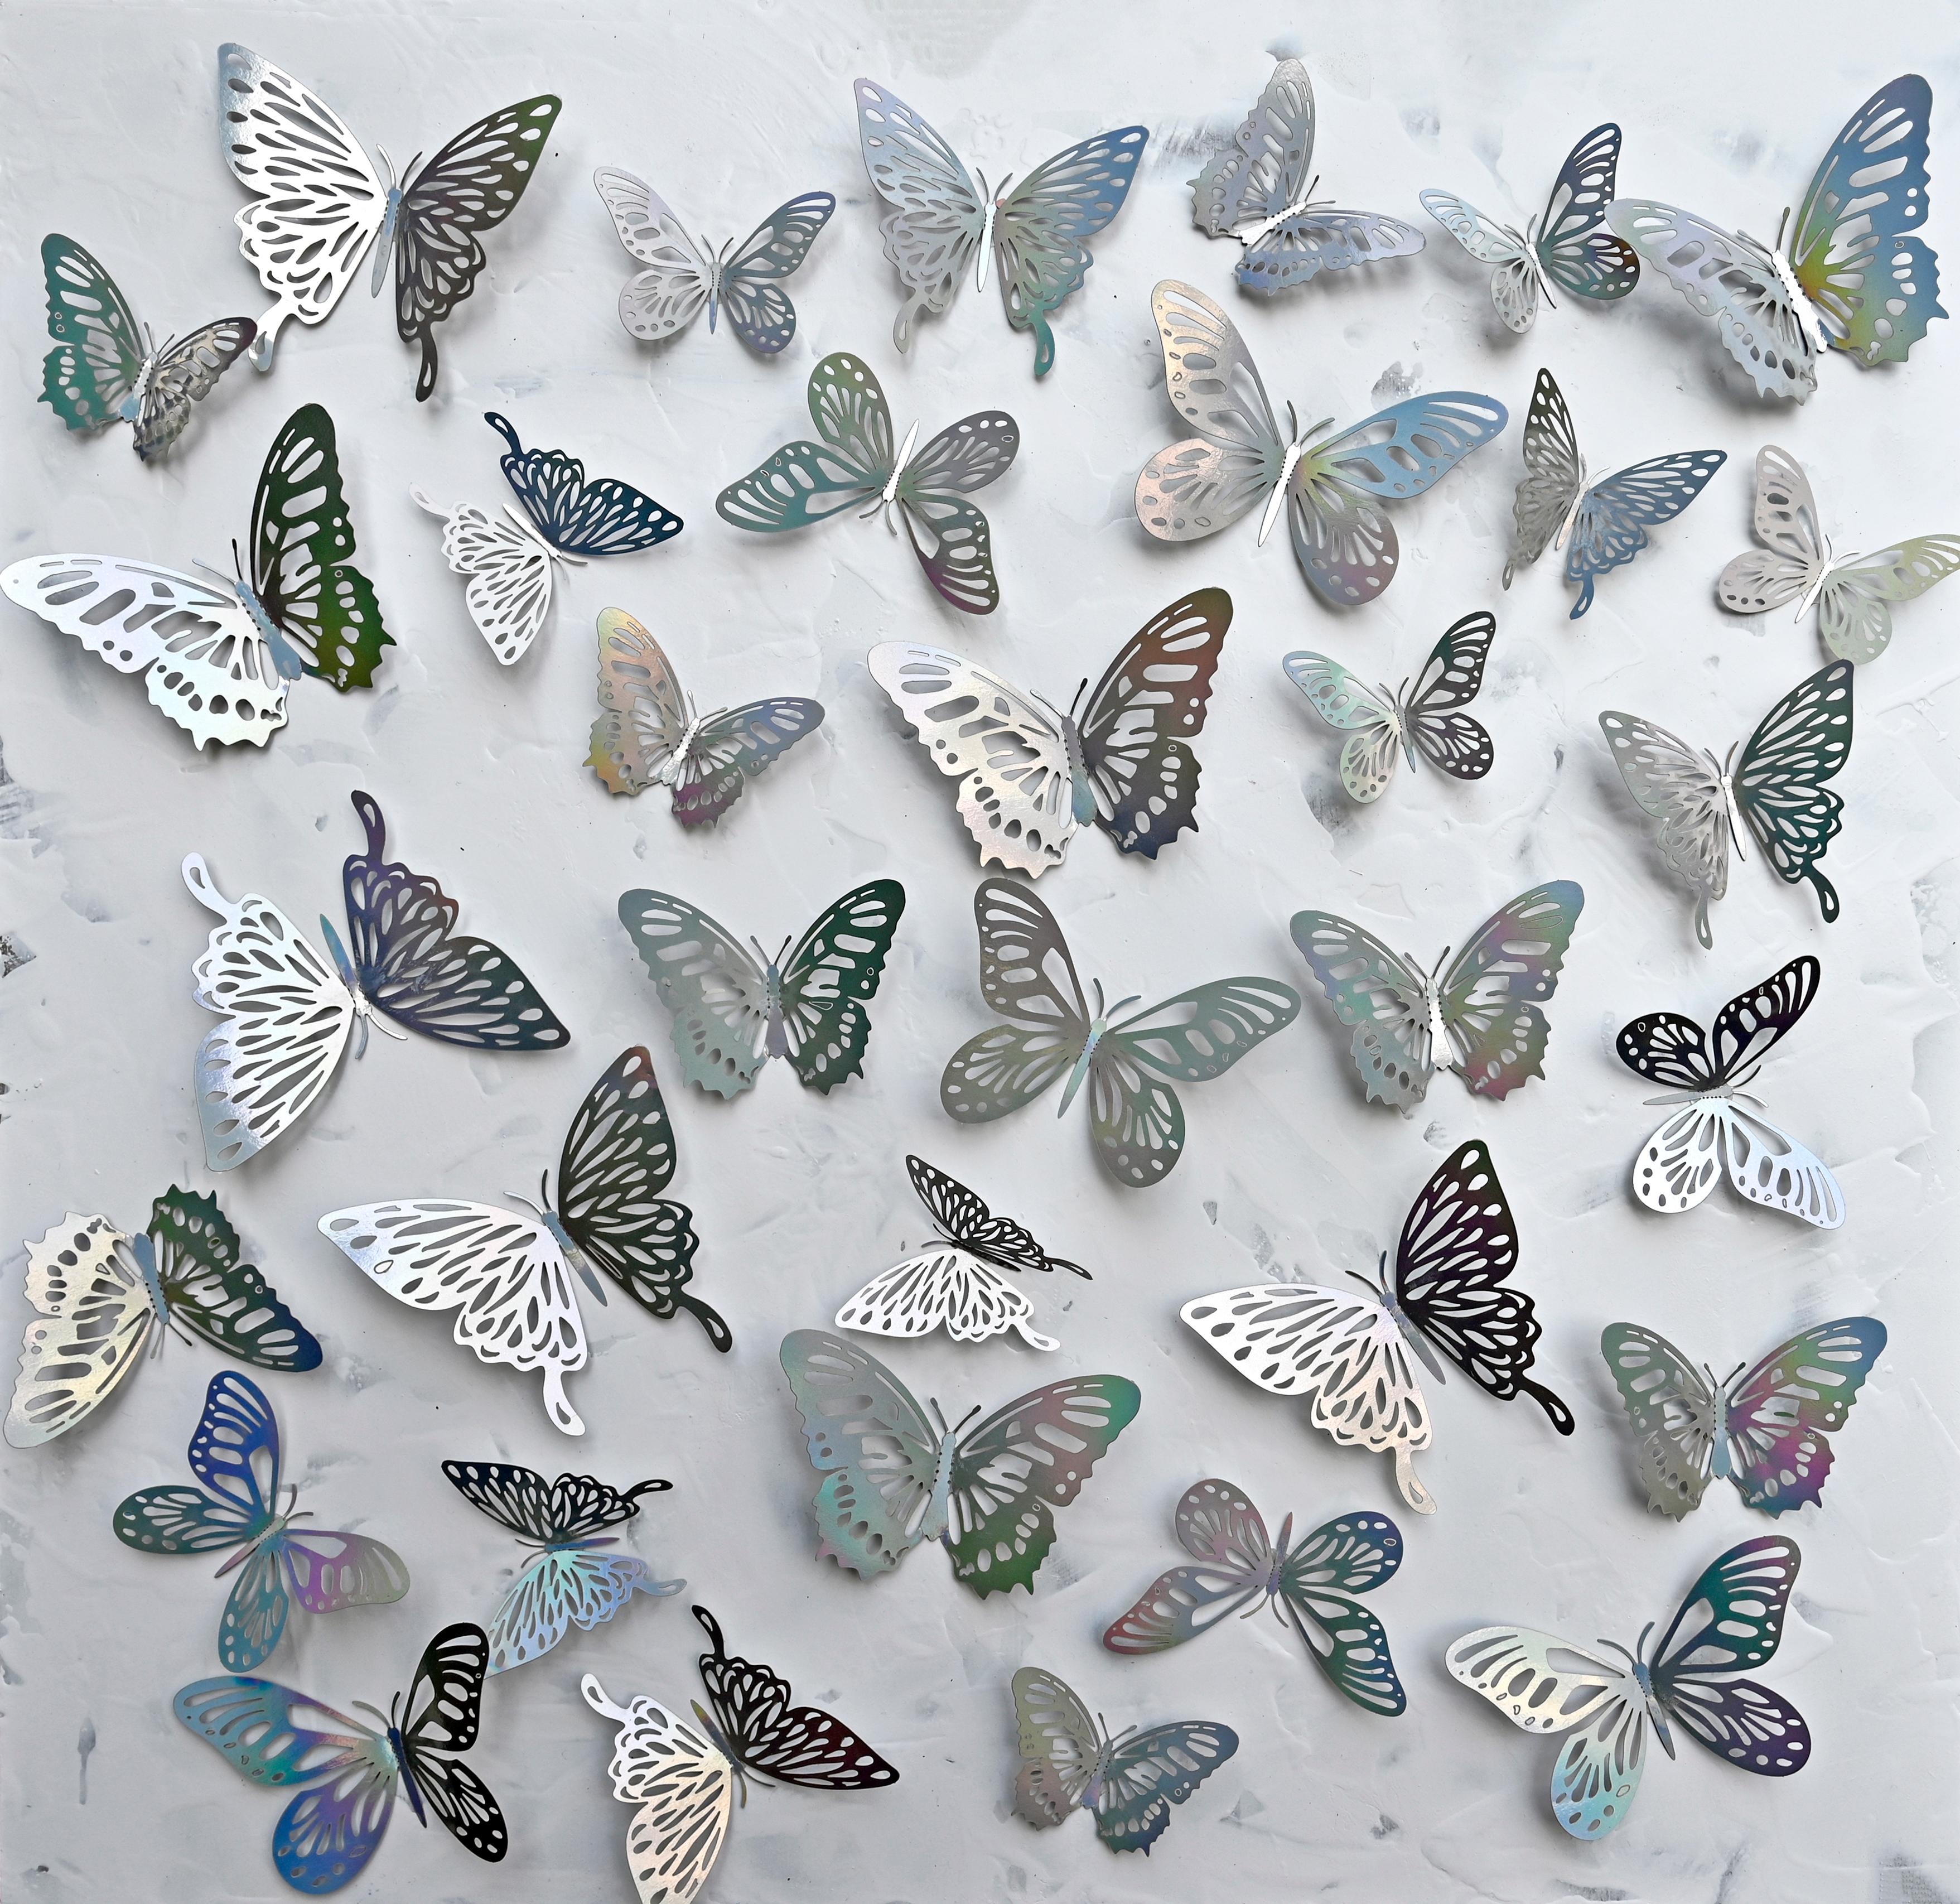 Zeitgenössische indische Kunst von Sumit Mehndiratta - Holografische Schmetterlinge 